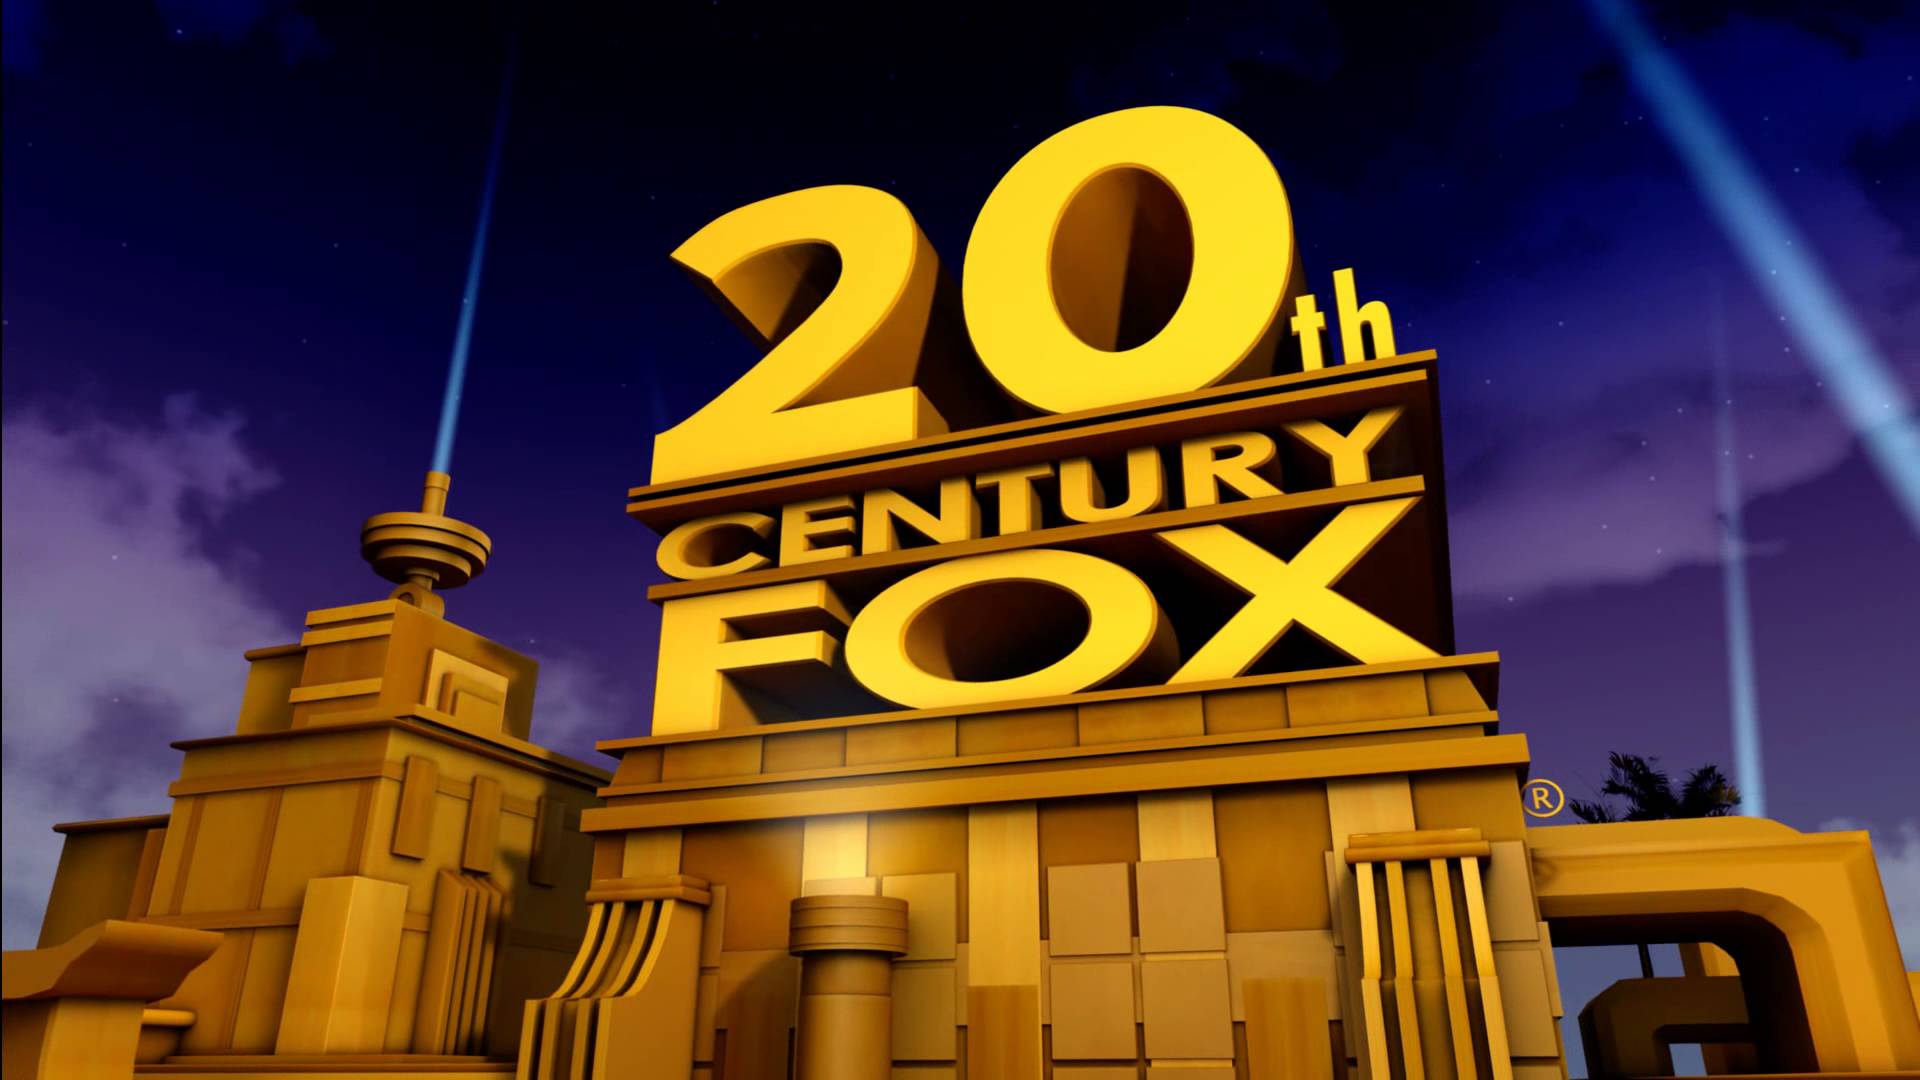 Fox divulga novas datas de estreia de Alien, Predador e filmes de super-heróis